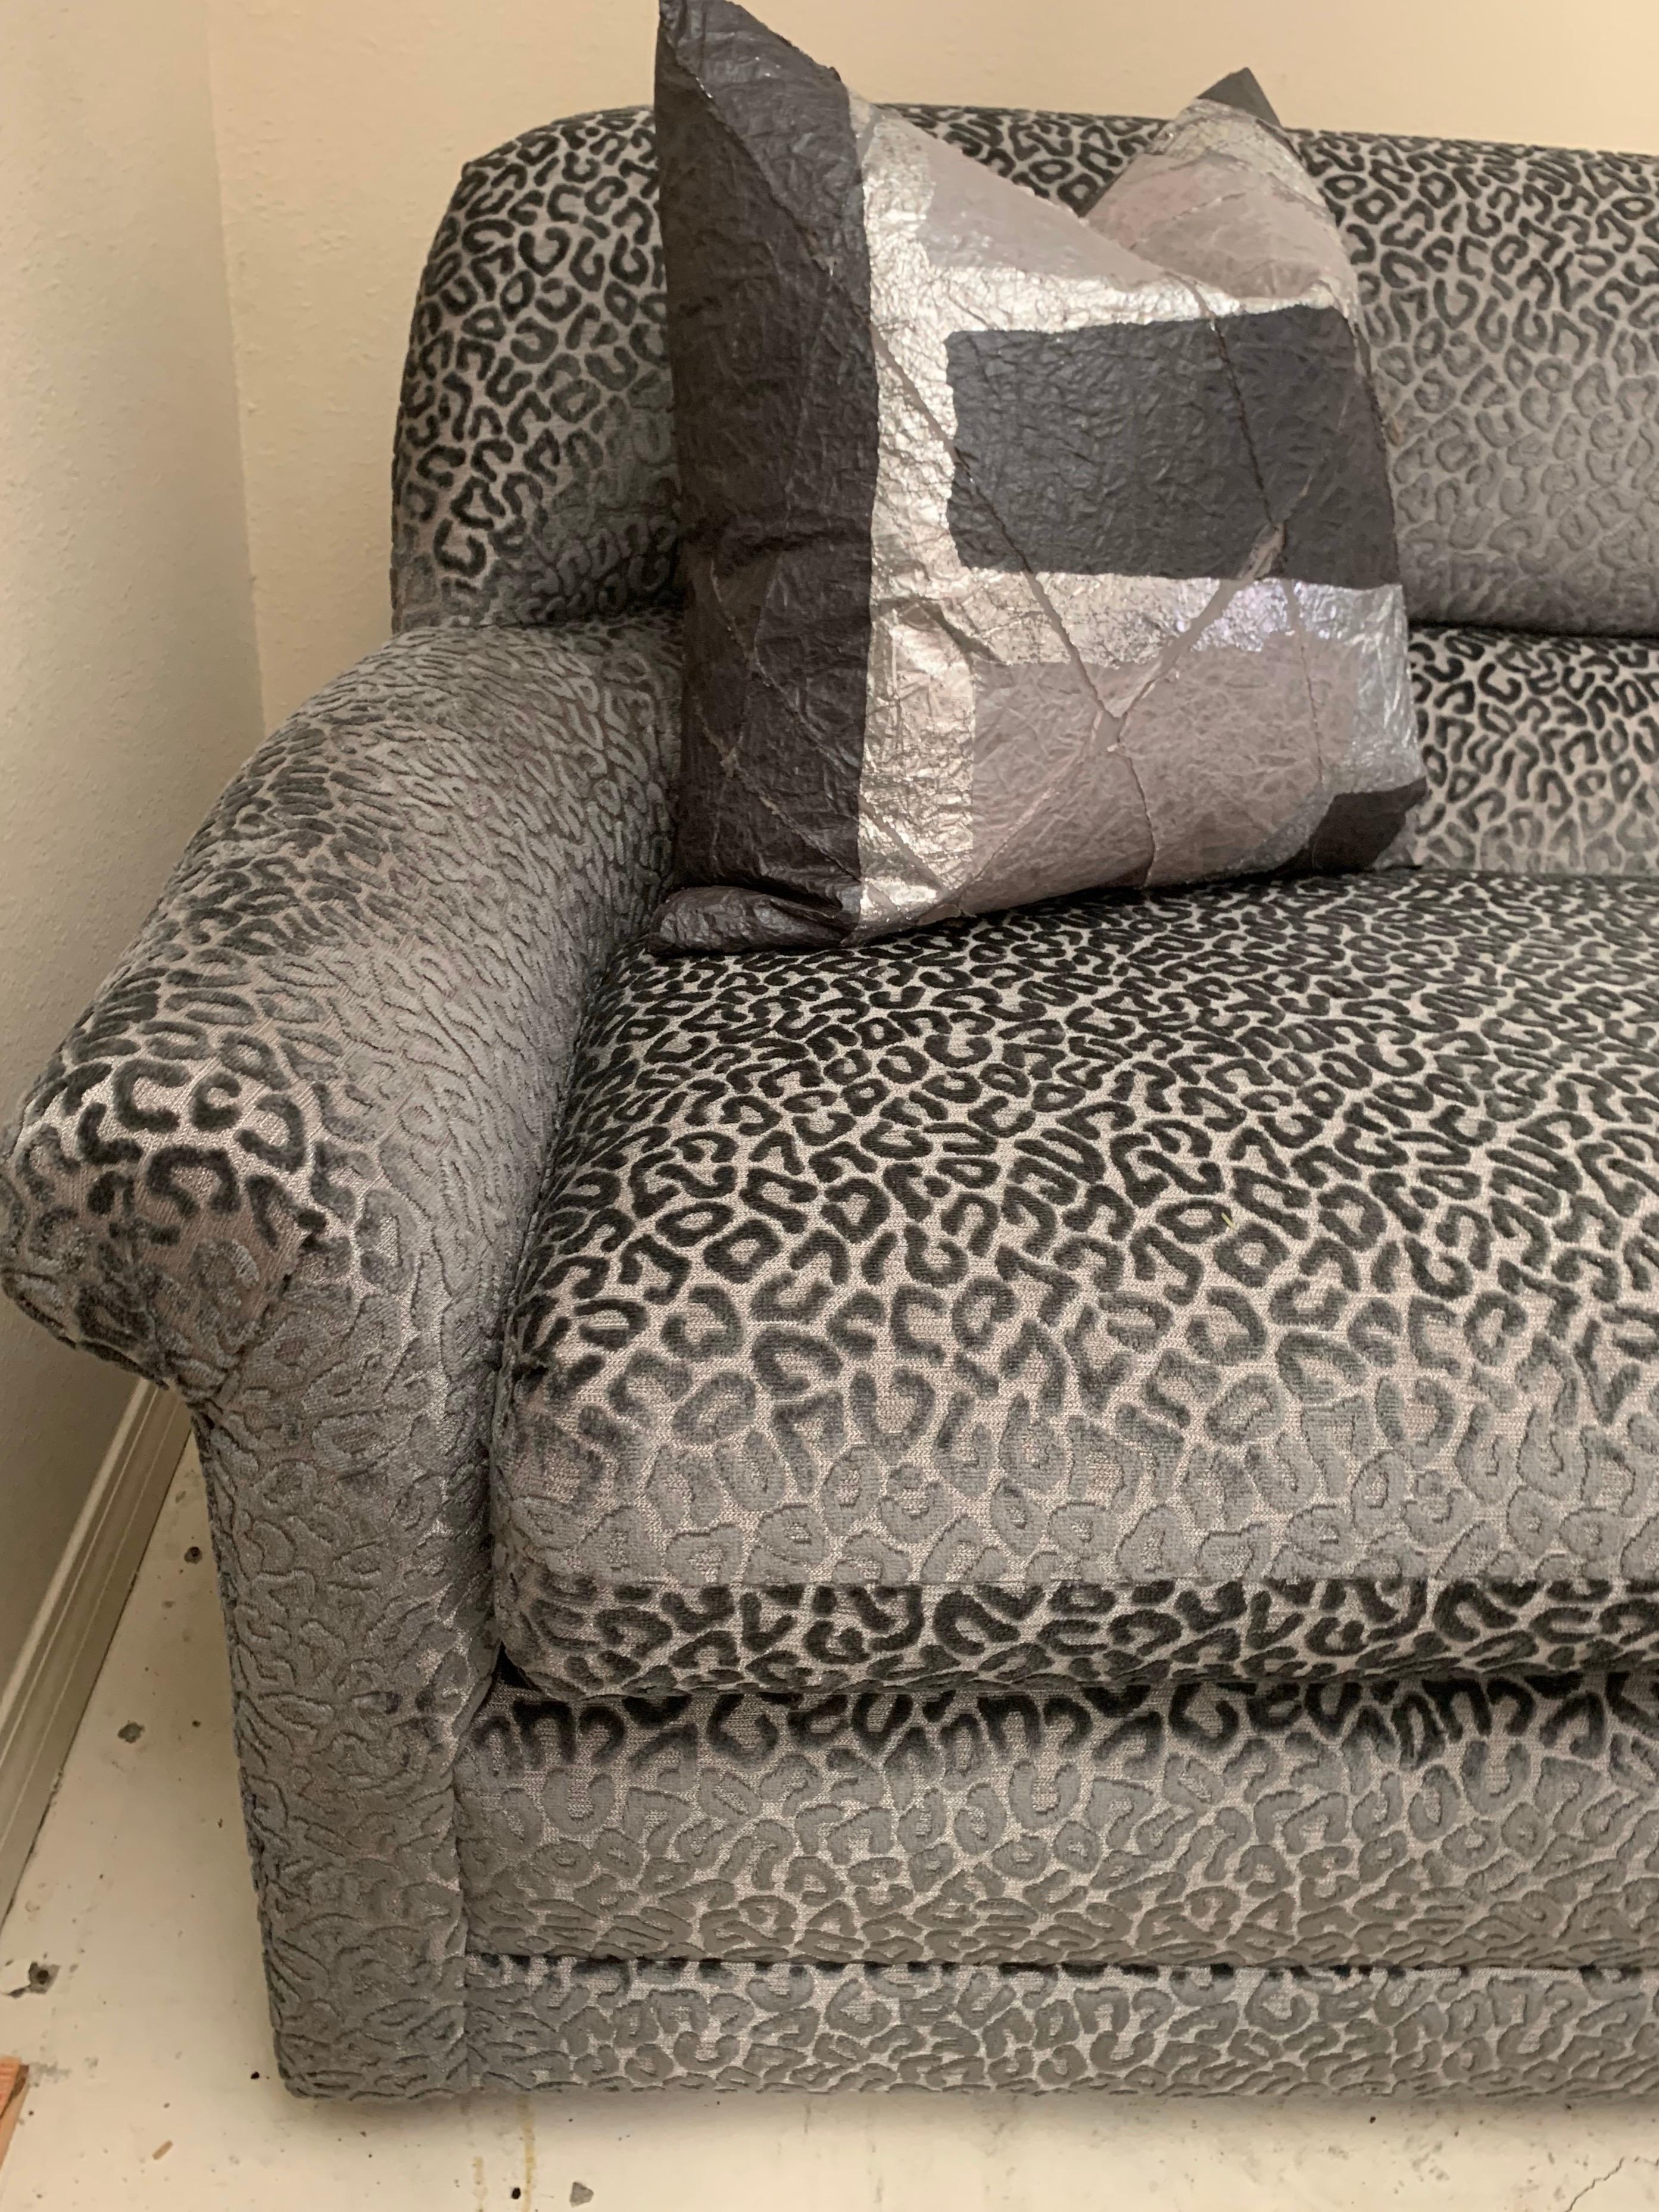 Wir haben ein fantastisches Sofa von Directional aus den 1980er Jahren genommen und einen spektakulären silbergrauen Leoparden-Samtstoff gefunden, um es neu zu beziehen. Das Ergebnis ist ein spektakuläres modernes Möbelstück. Skulpturale Form mit